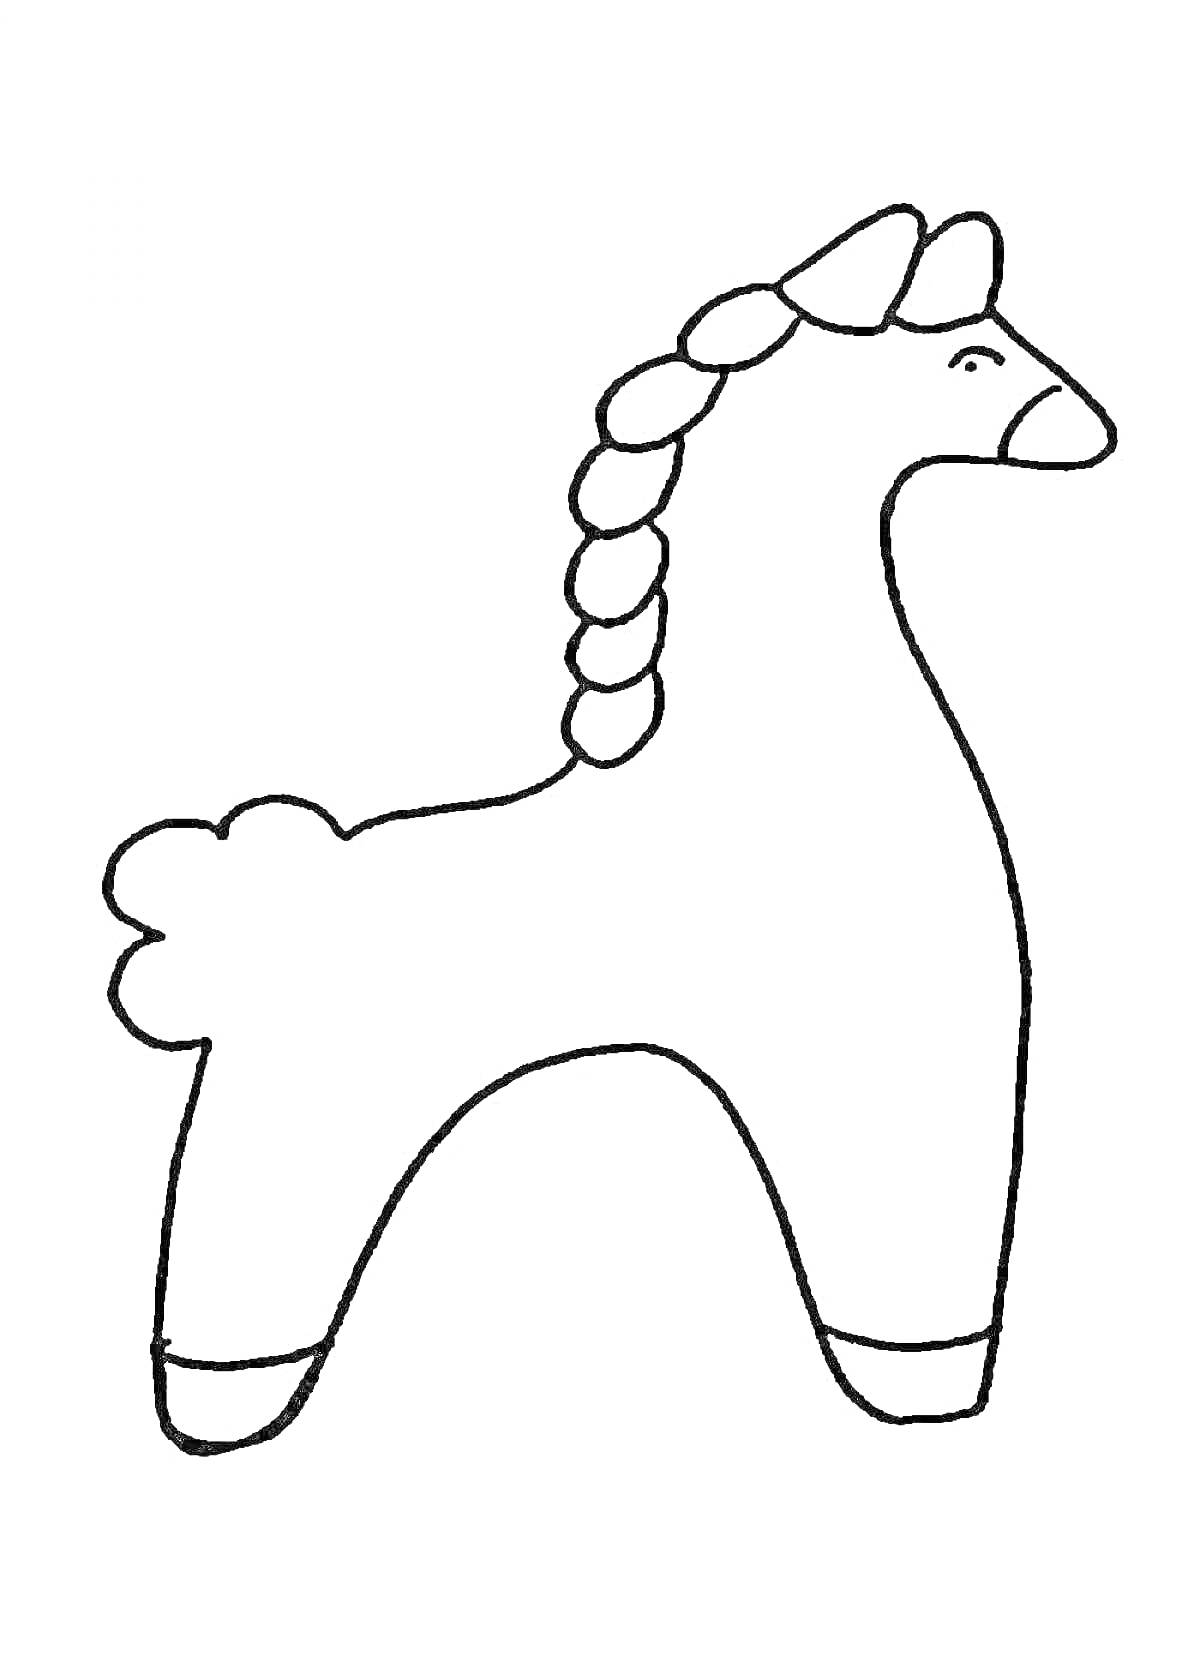 Раскраска Дымковская лошадка с заплетенной гривой и хвостом, с полосками на ногах